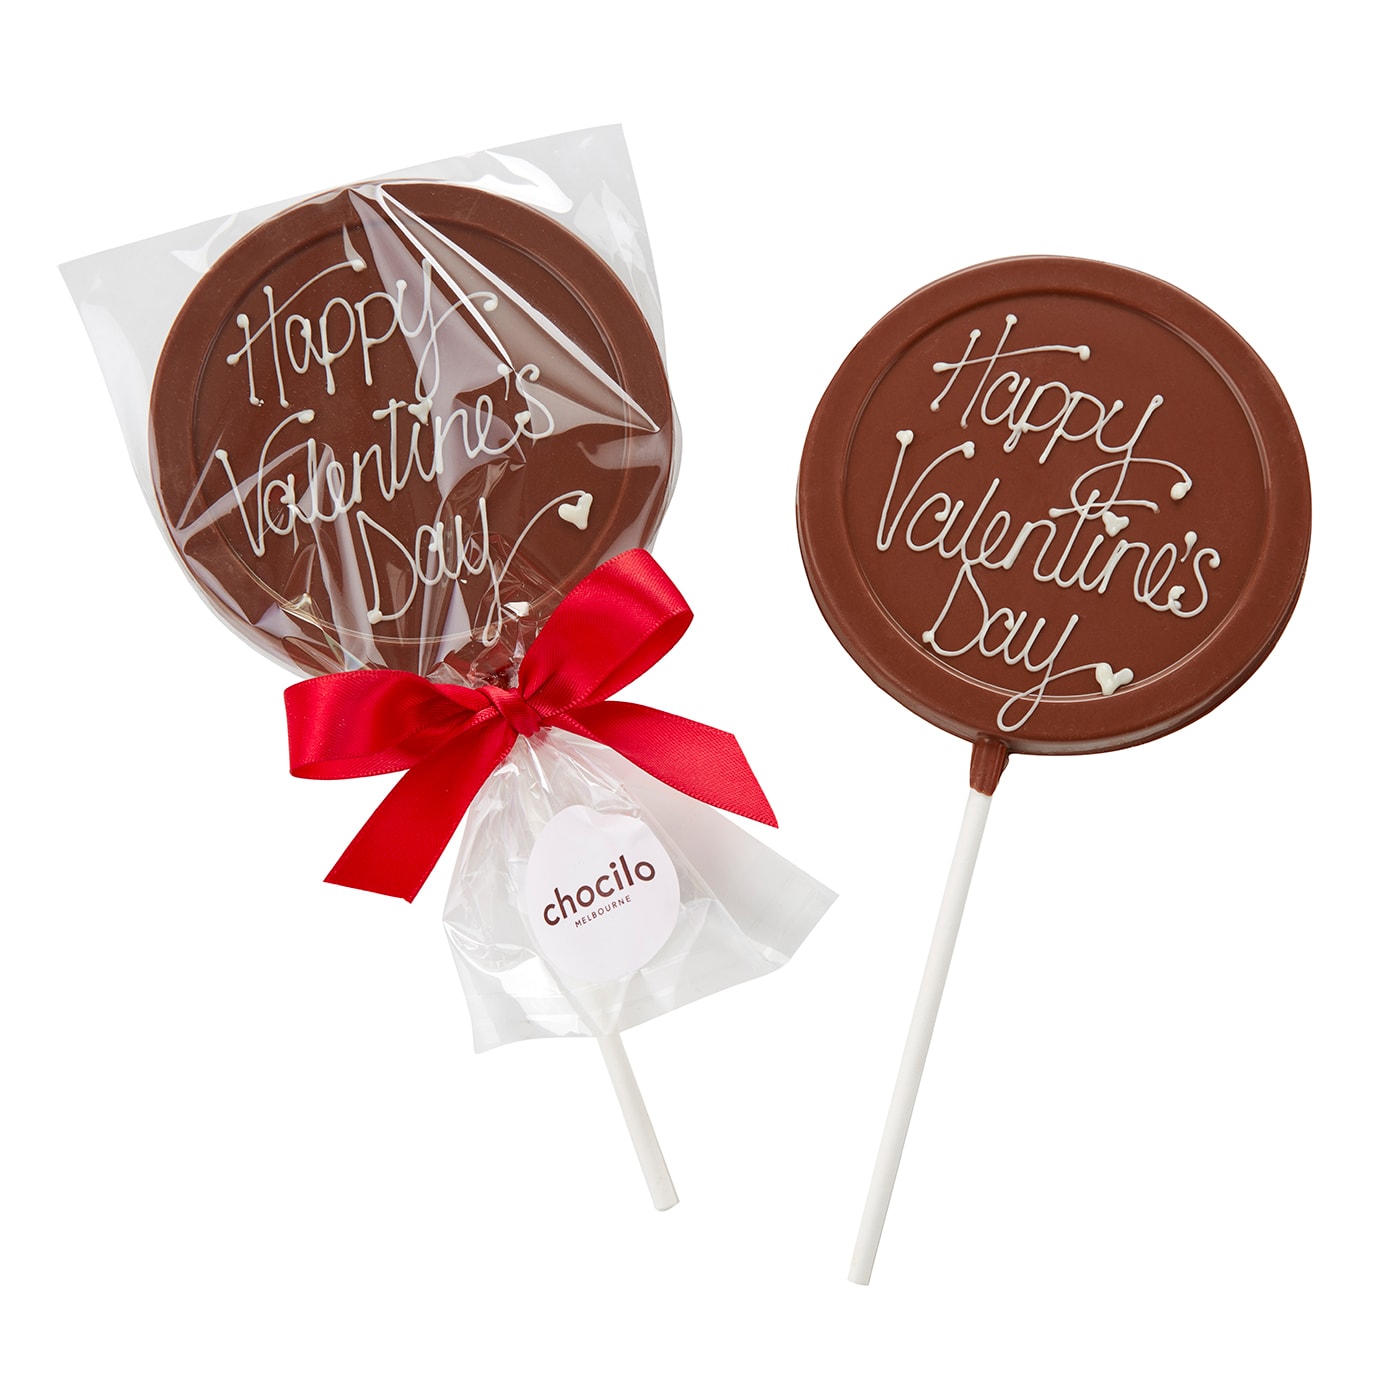 Chocilo Melbourne "Happy Valentine's Day" Lollipop in Milk Chocolate 45g